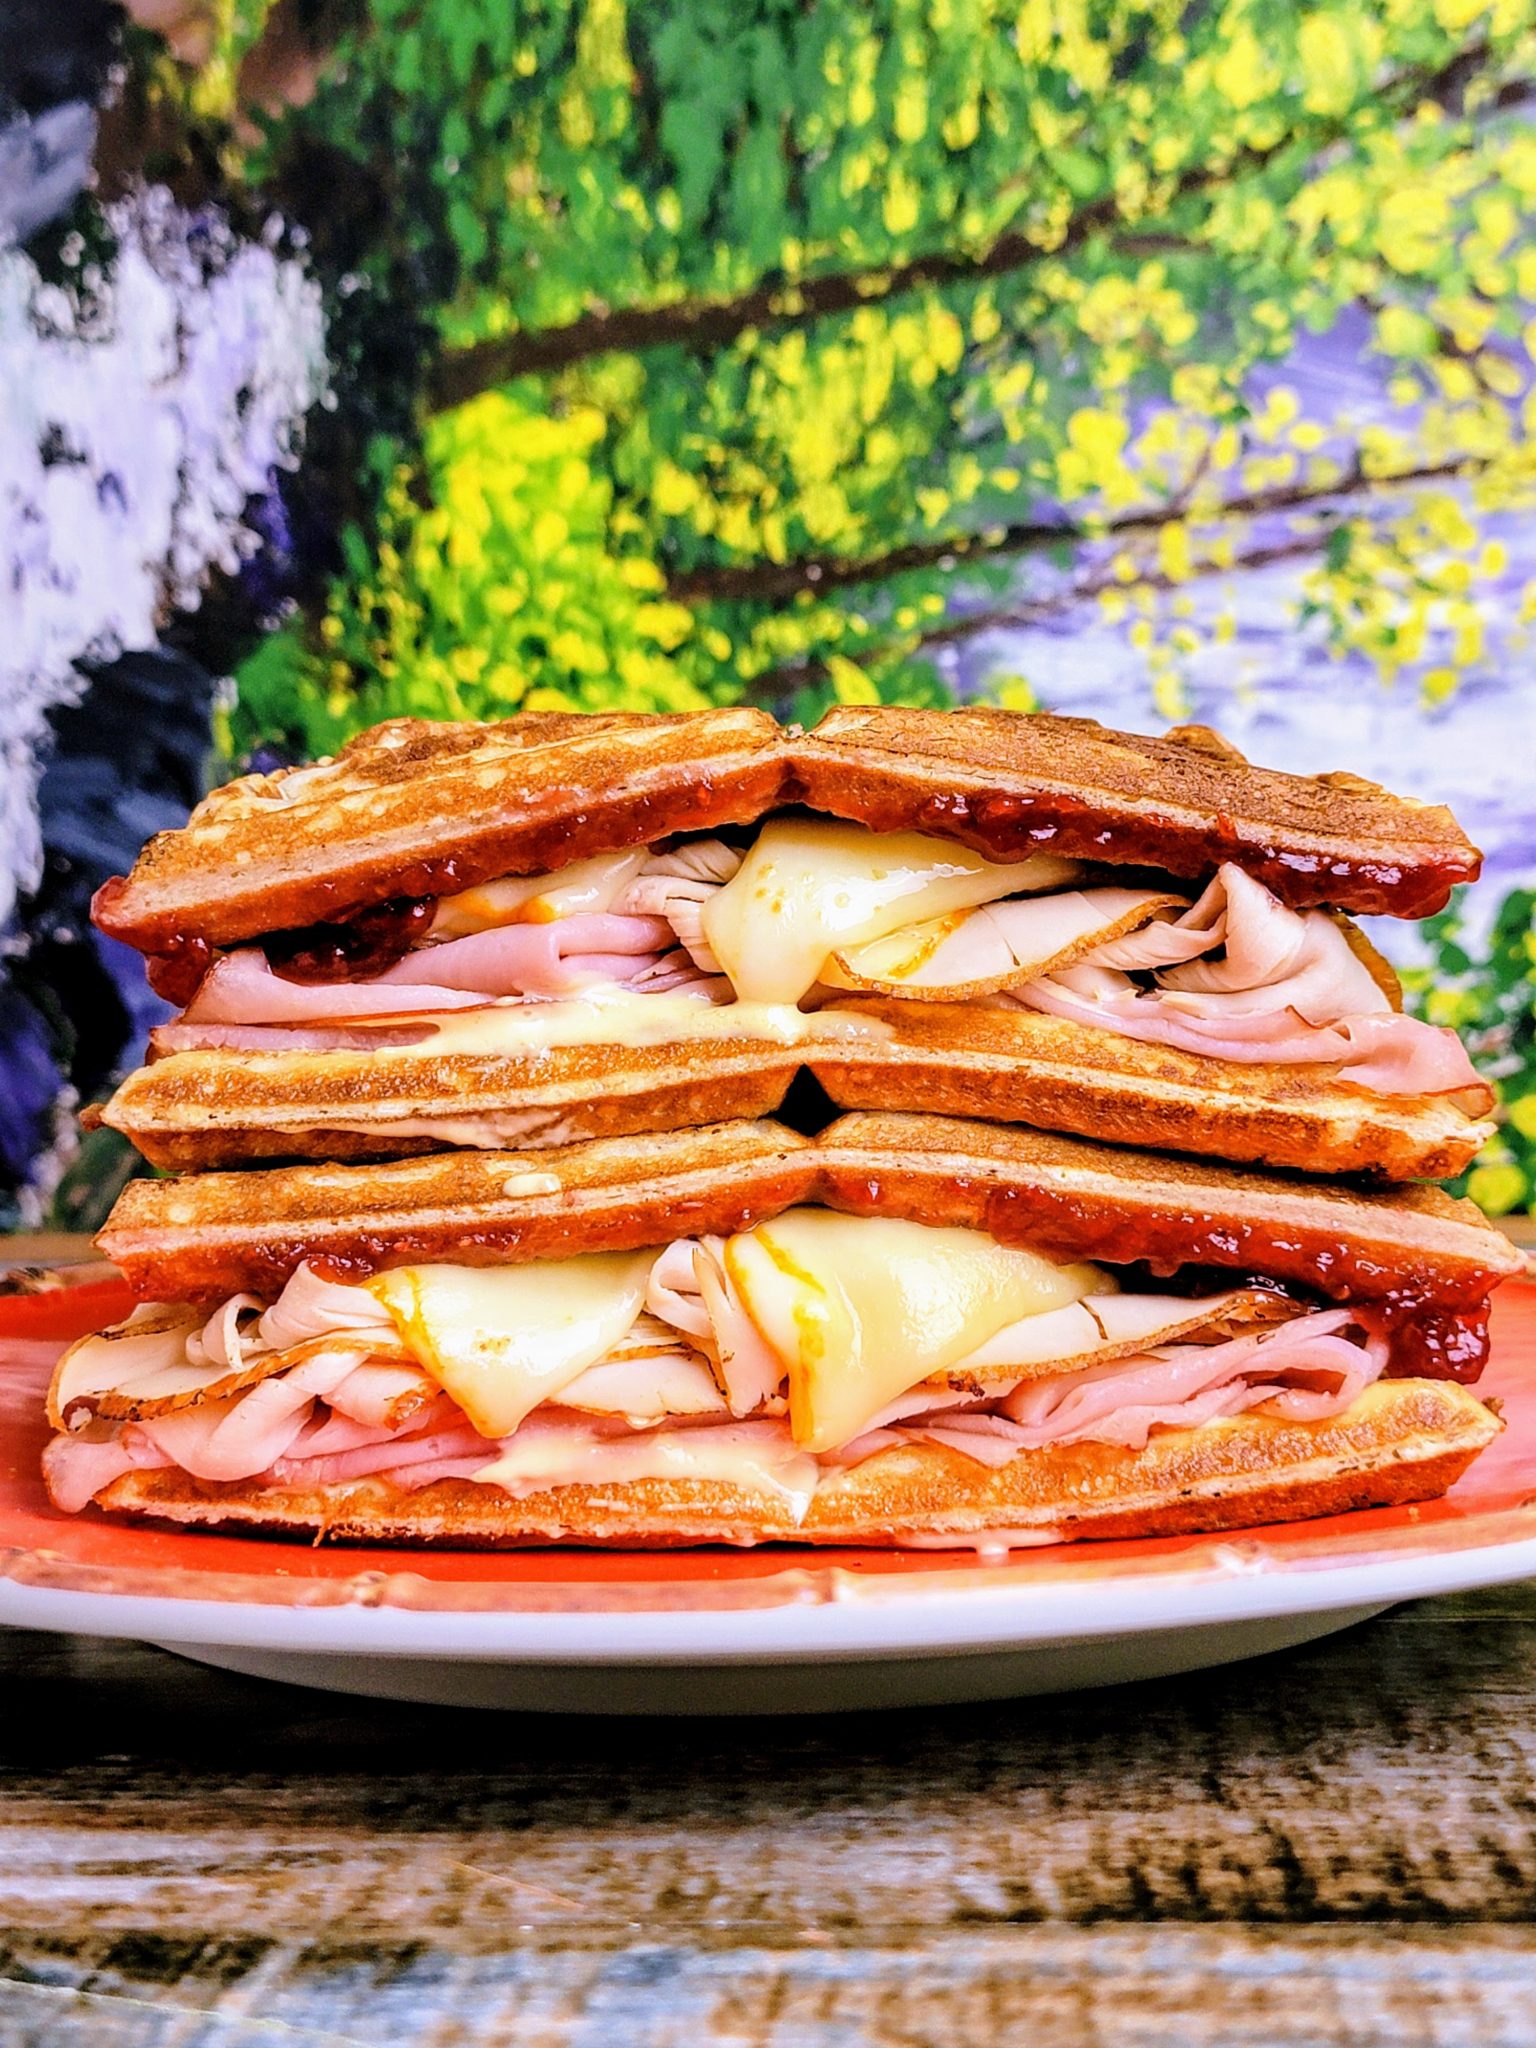 https://throwdownkitchen.com/wp-content/uploads/2021/05/Monte-Cristo-Sandwich-On-Waffles-scaled.jpg